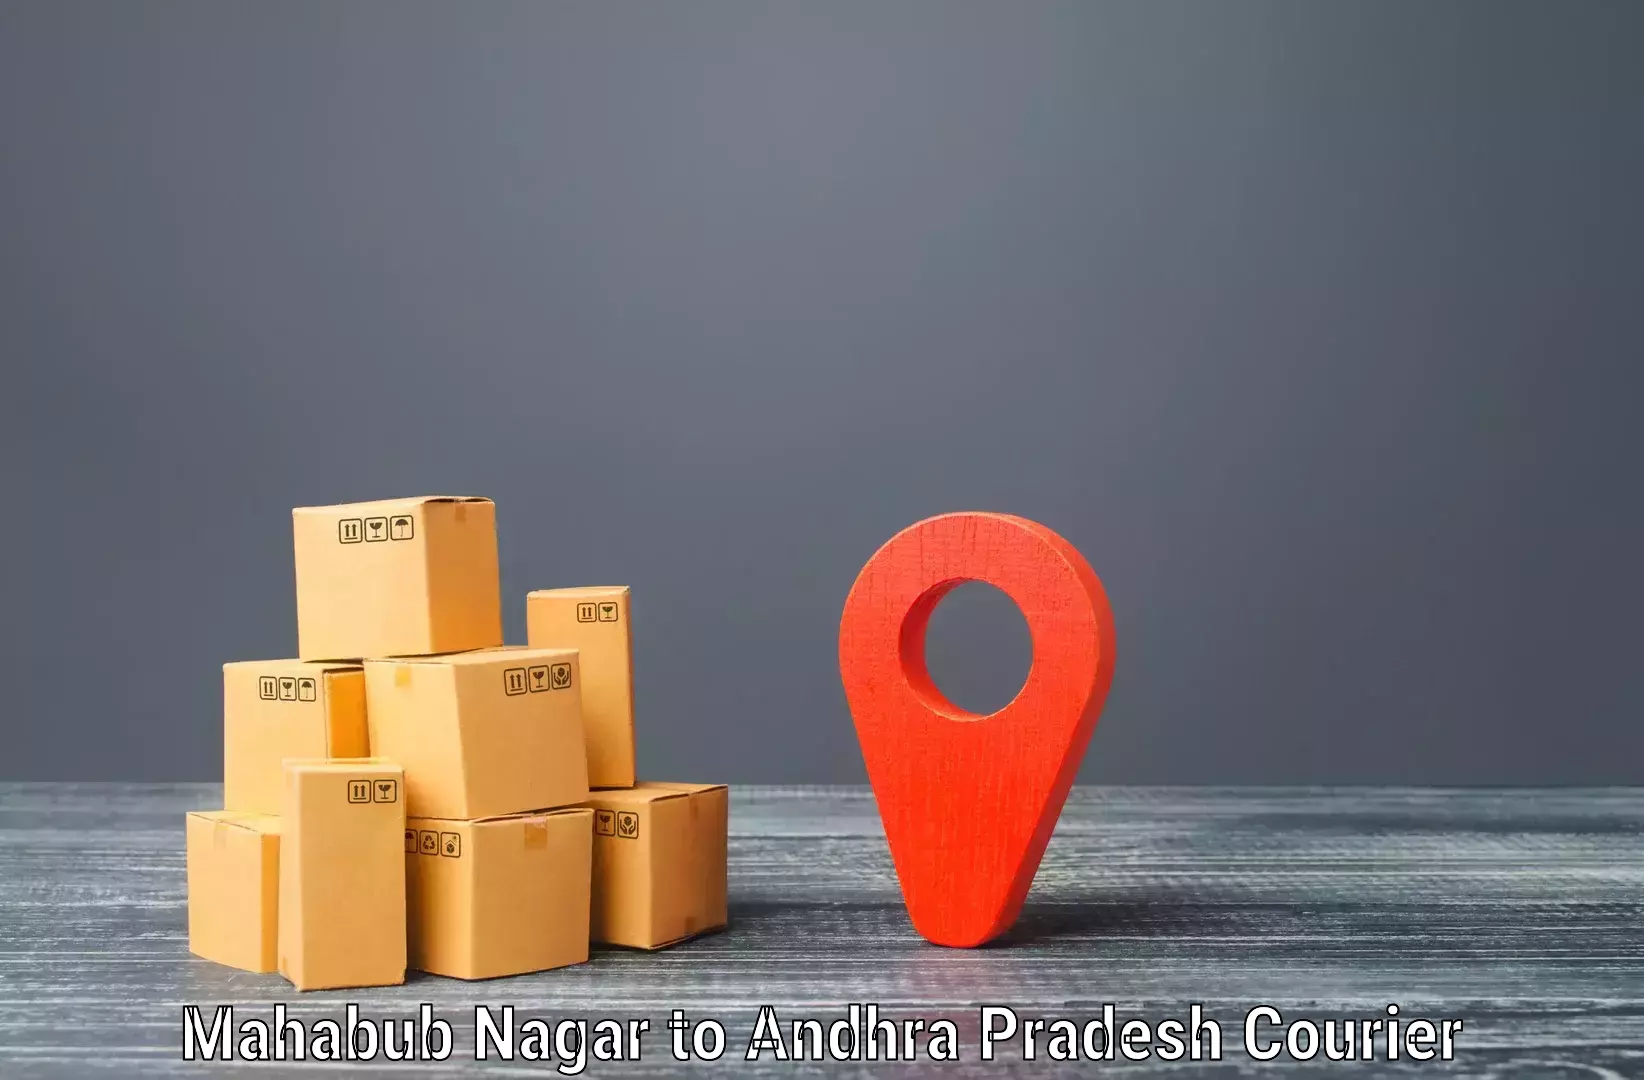 Personal courier services Mahabub Nagar to Bobbili